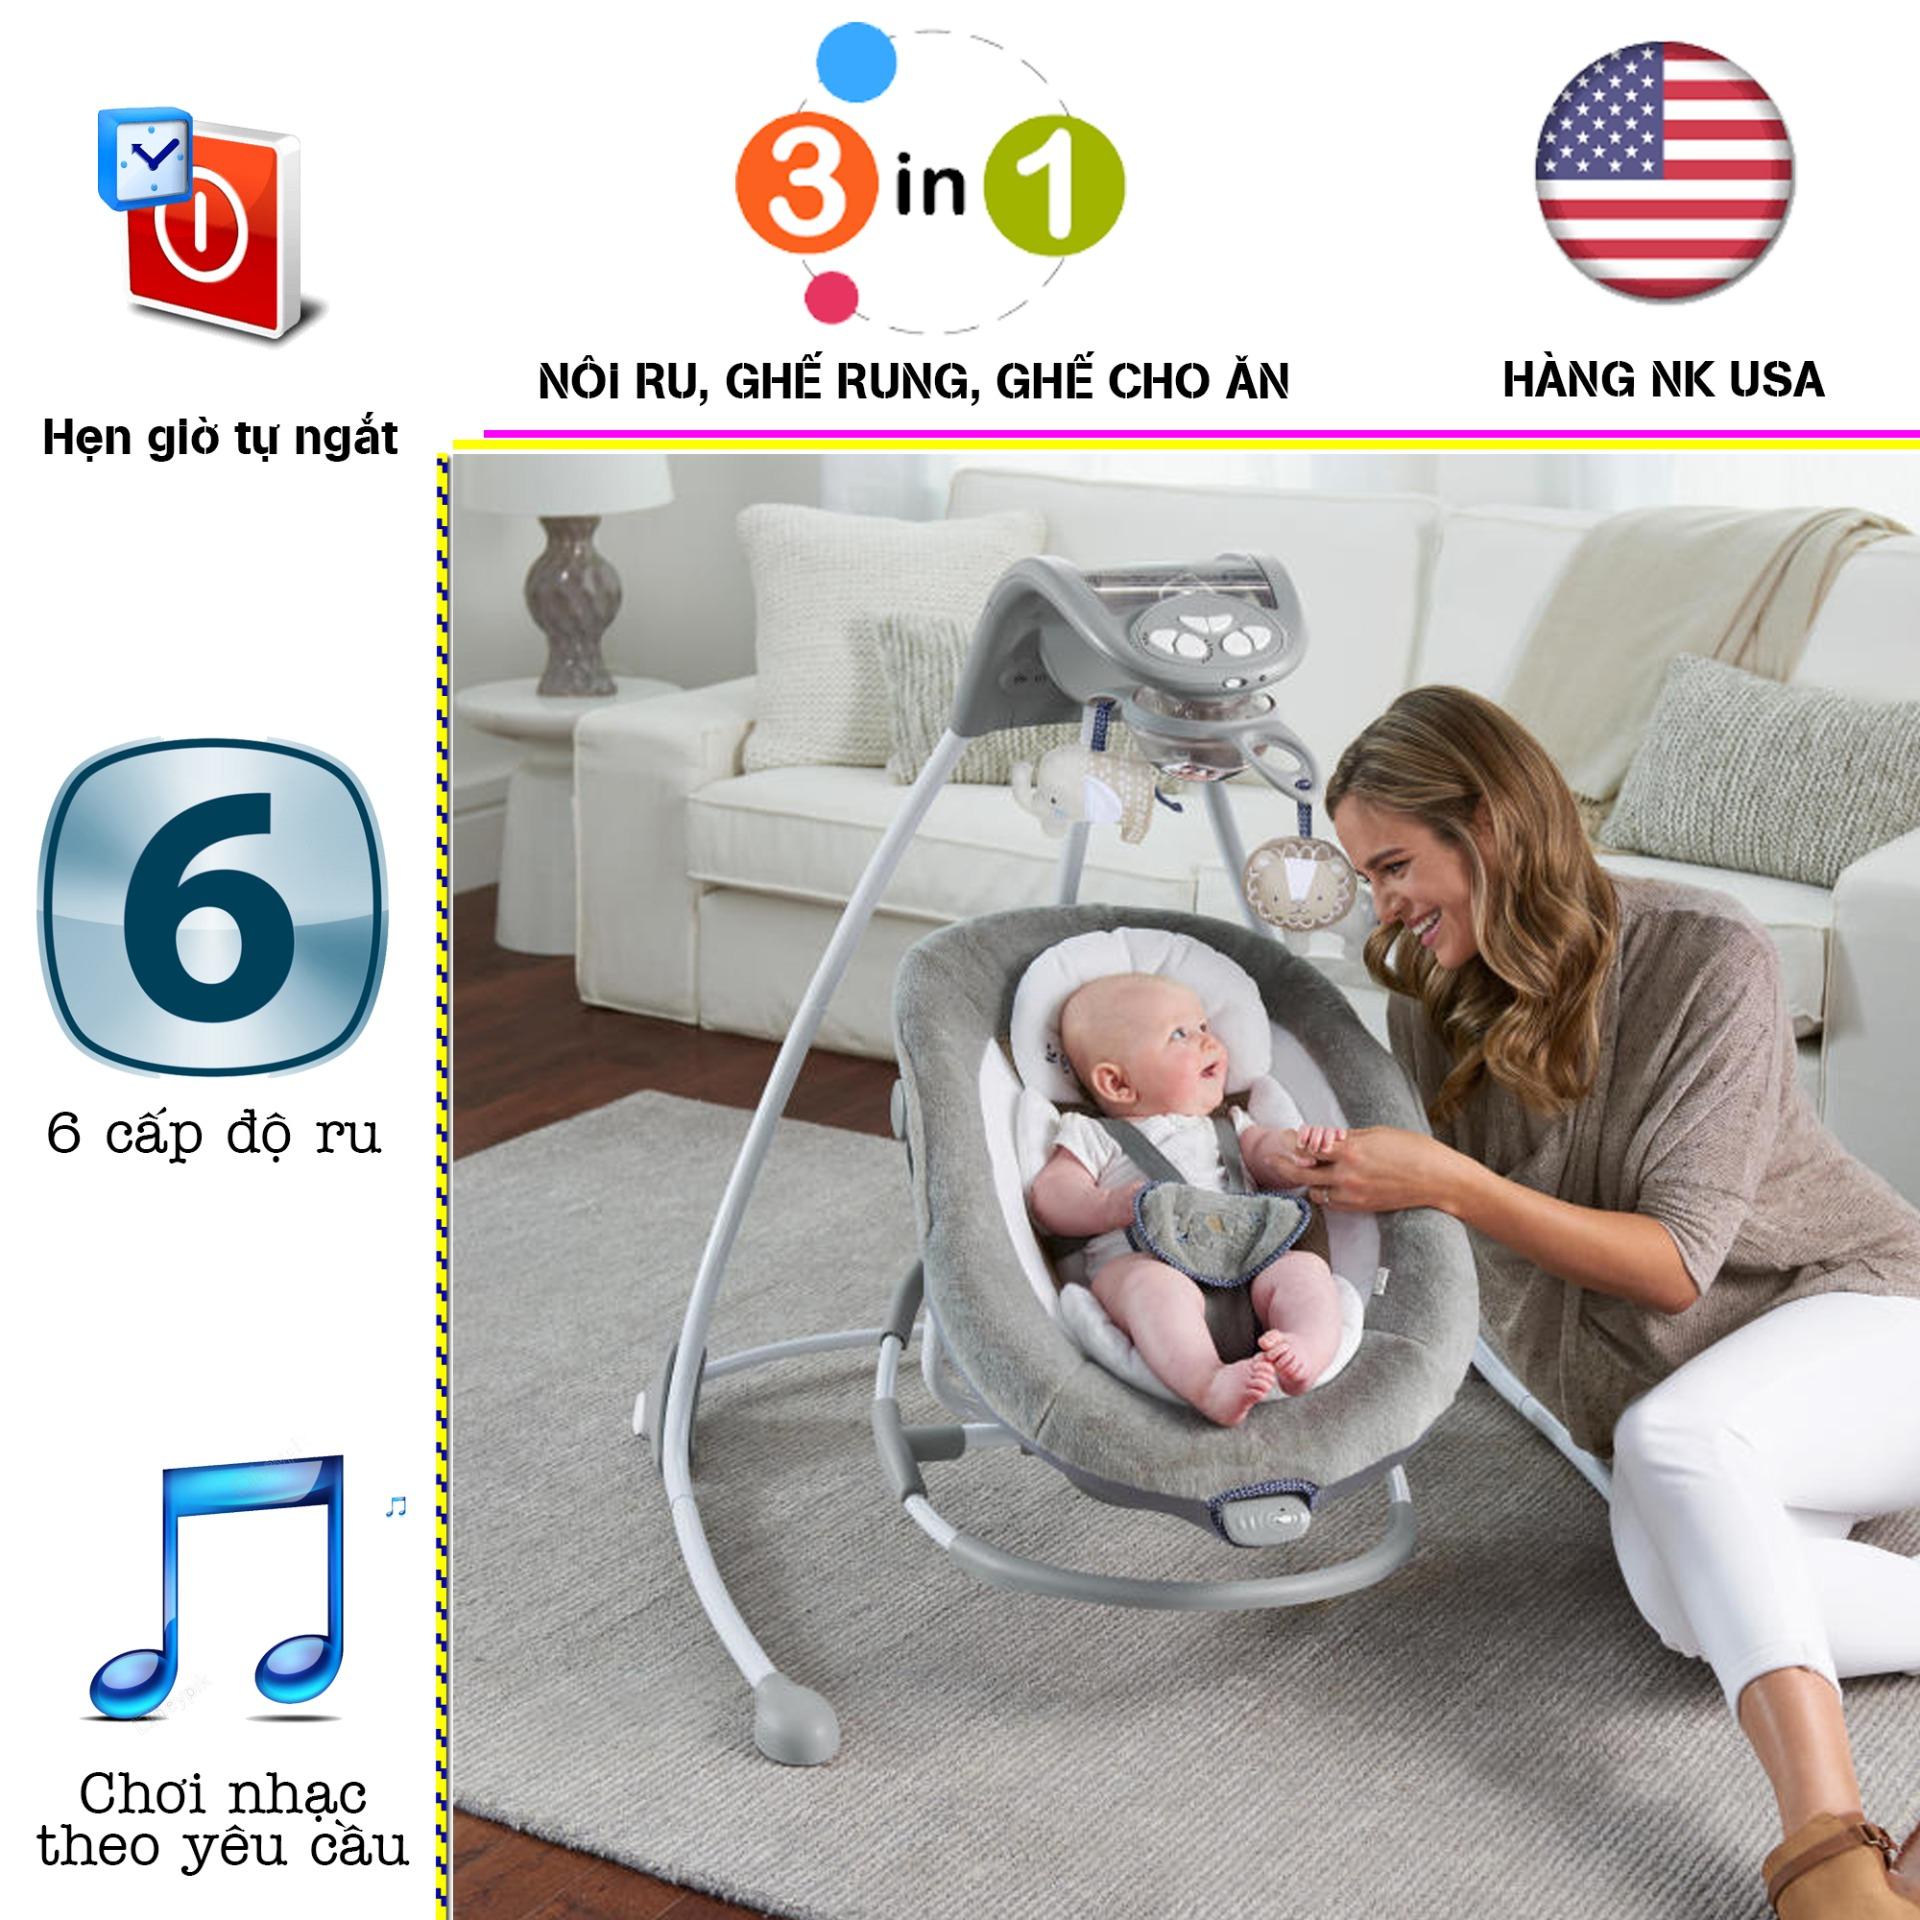 [HCM][USA] Nôi điện em bé Ingenuity Twinkle Tails 2in1 mới nhất của Mỹ nhập khẩu FULL BOX rung 4 chiều kết nối nhạc điện thoại đồ chơi thú và quả cầu ánh sáng an toàn giúp bé có giấc ngủ ngon và sâu